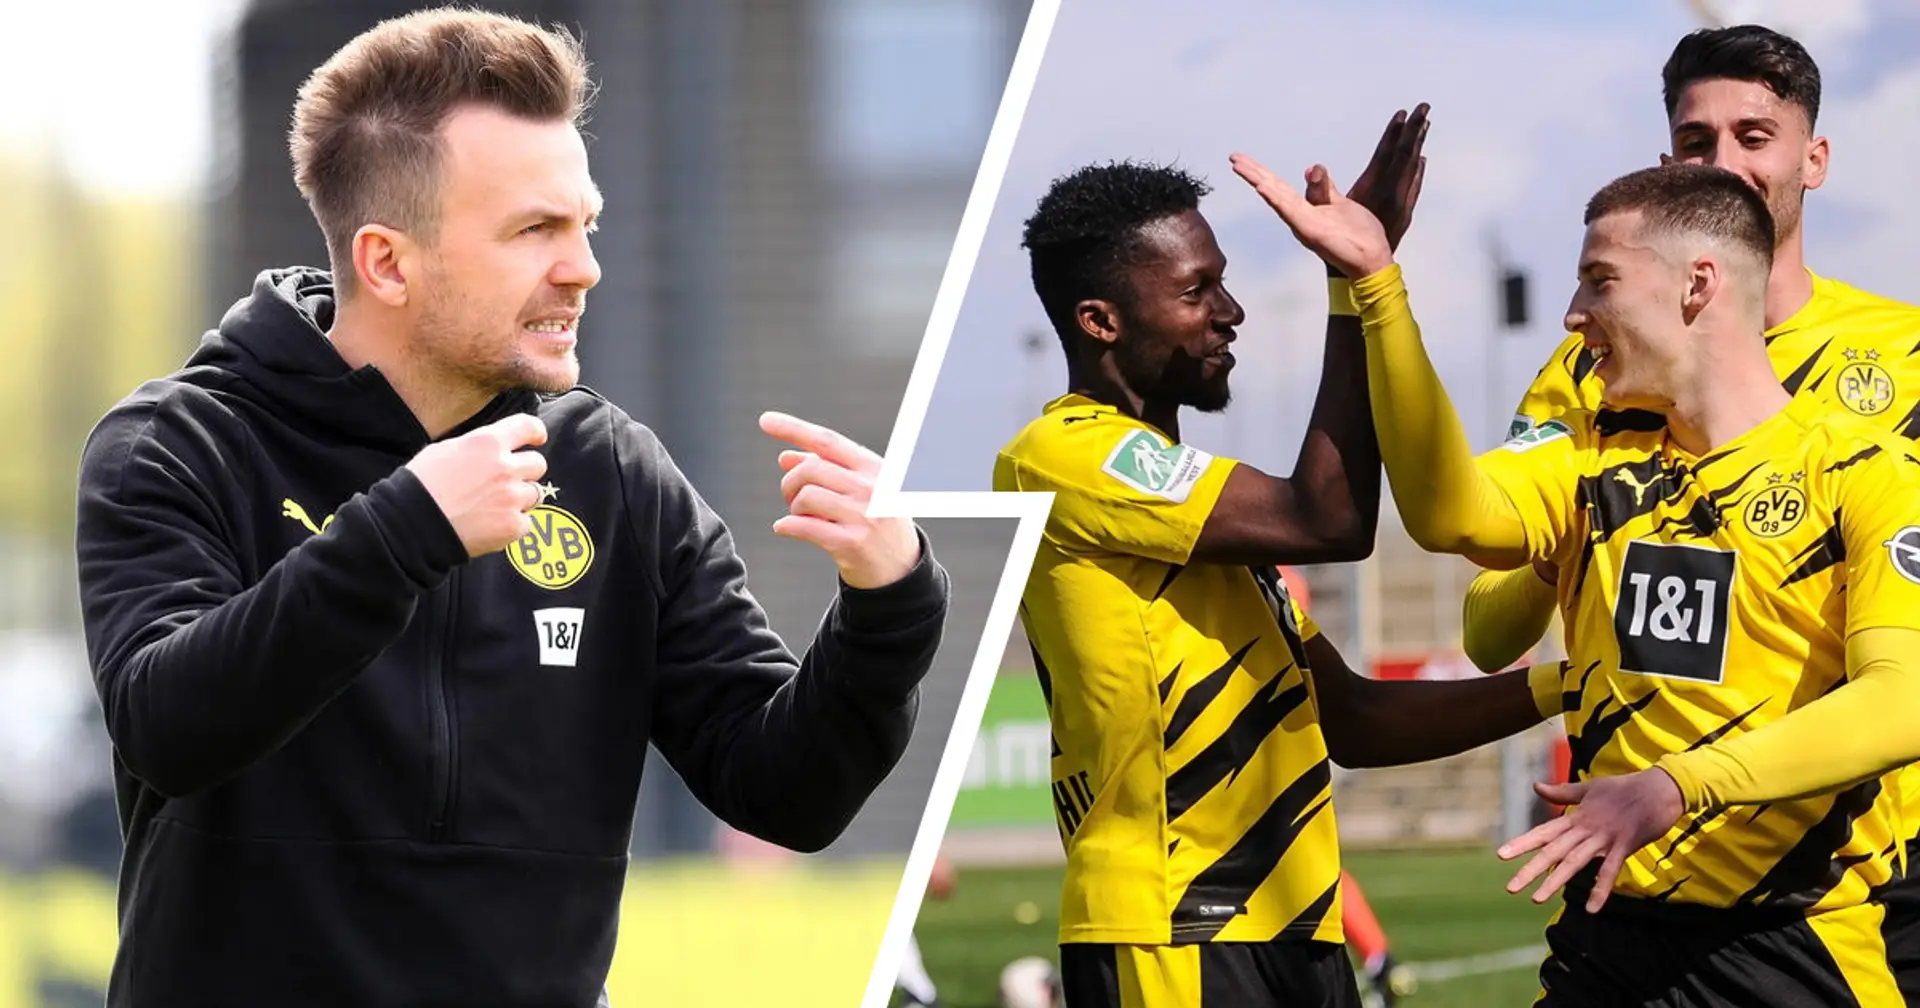 U23 in Österreich, U19 wieder vor Fans: Spielplan der Saisonvorbereitung jungen Dortmunder ist bekannt